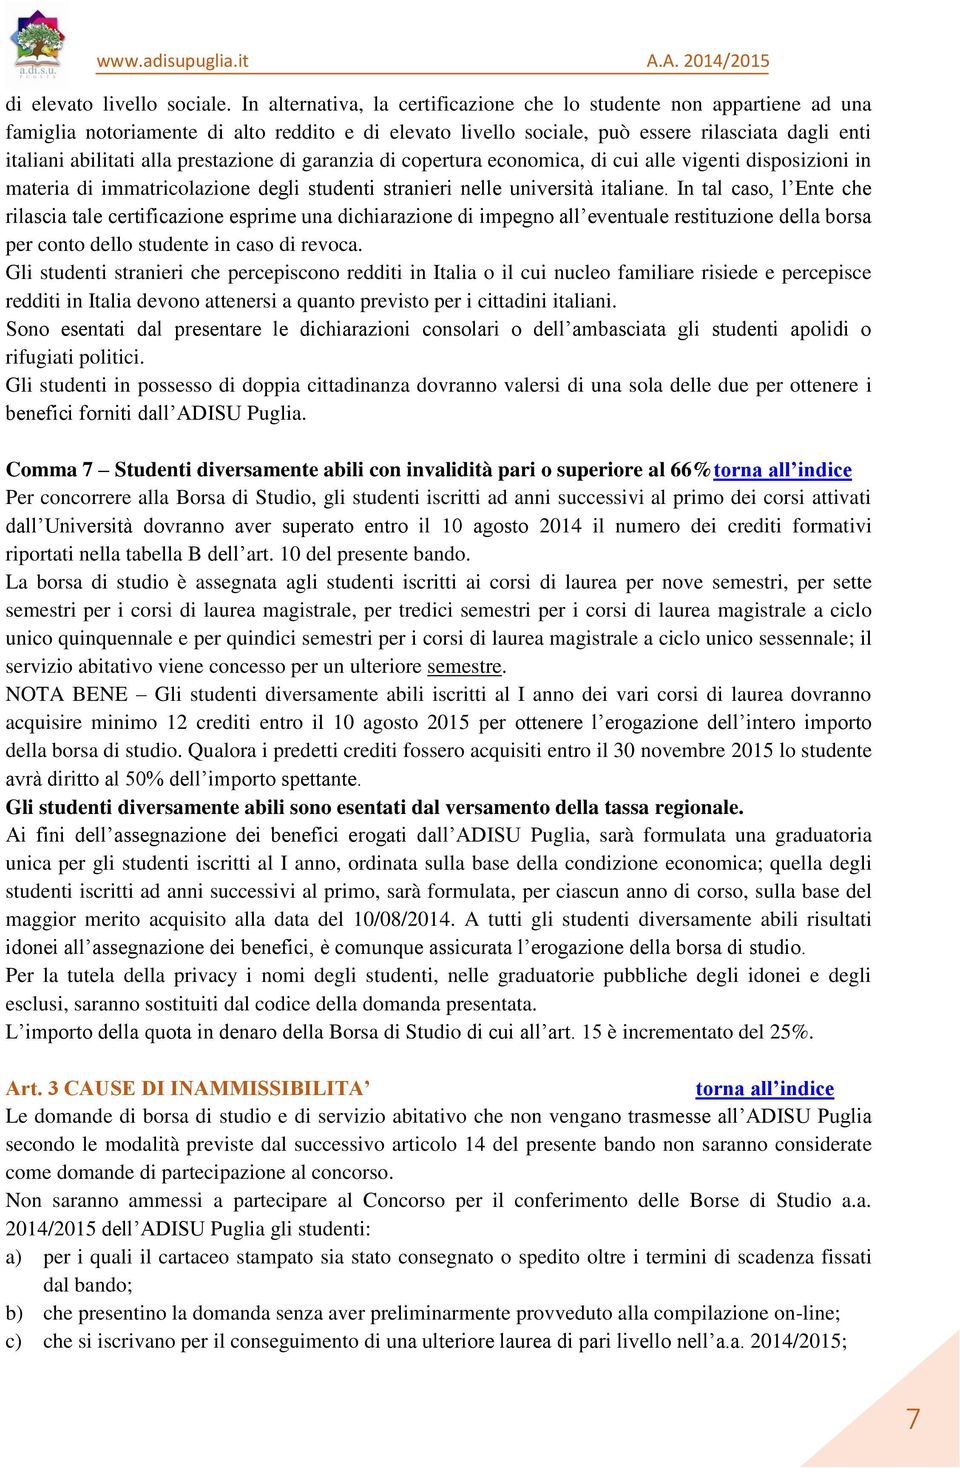 prestazione di garanzia di copertura economica, di cui alle vigenti disposizioni in materia di immatricolazione degli studenti stranieri nelle università italiane.